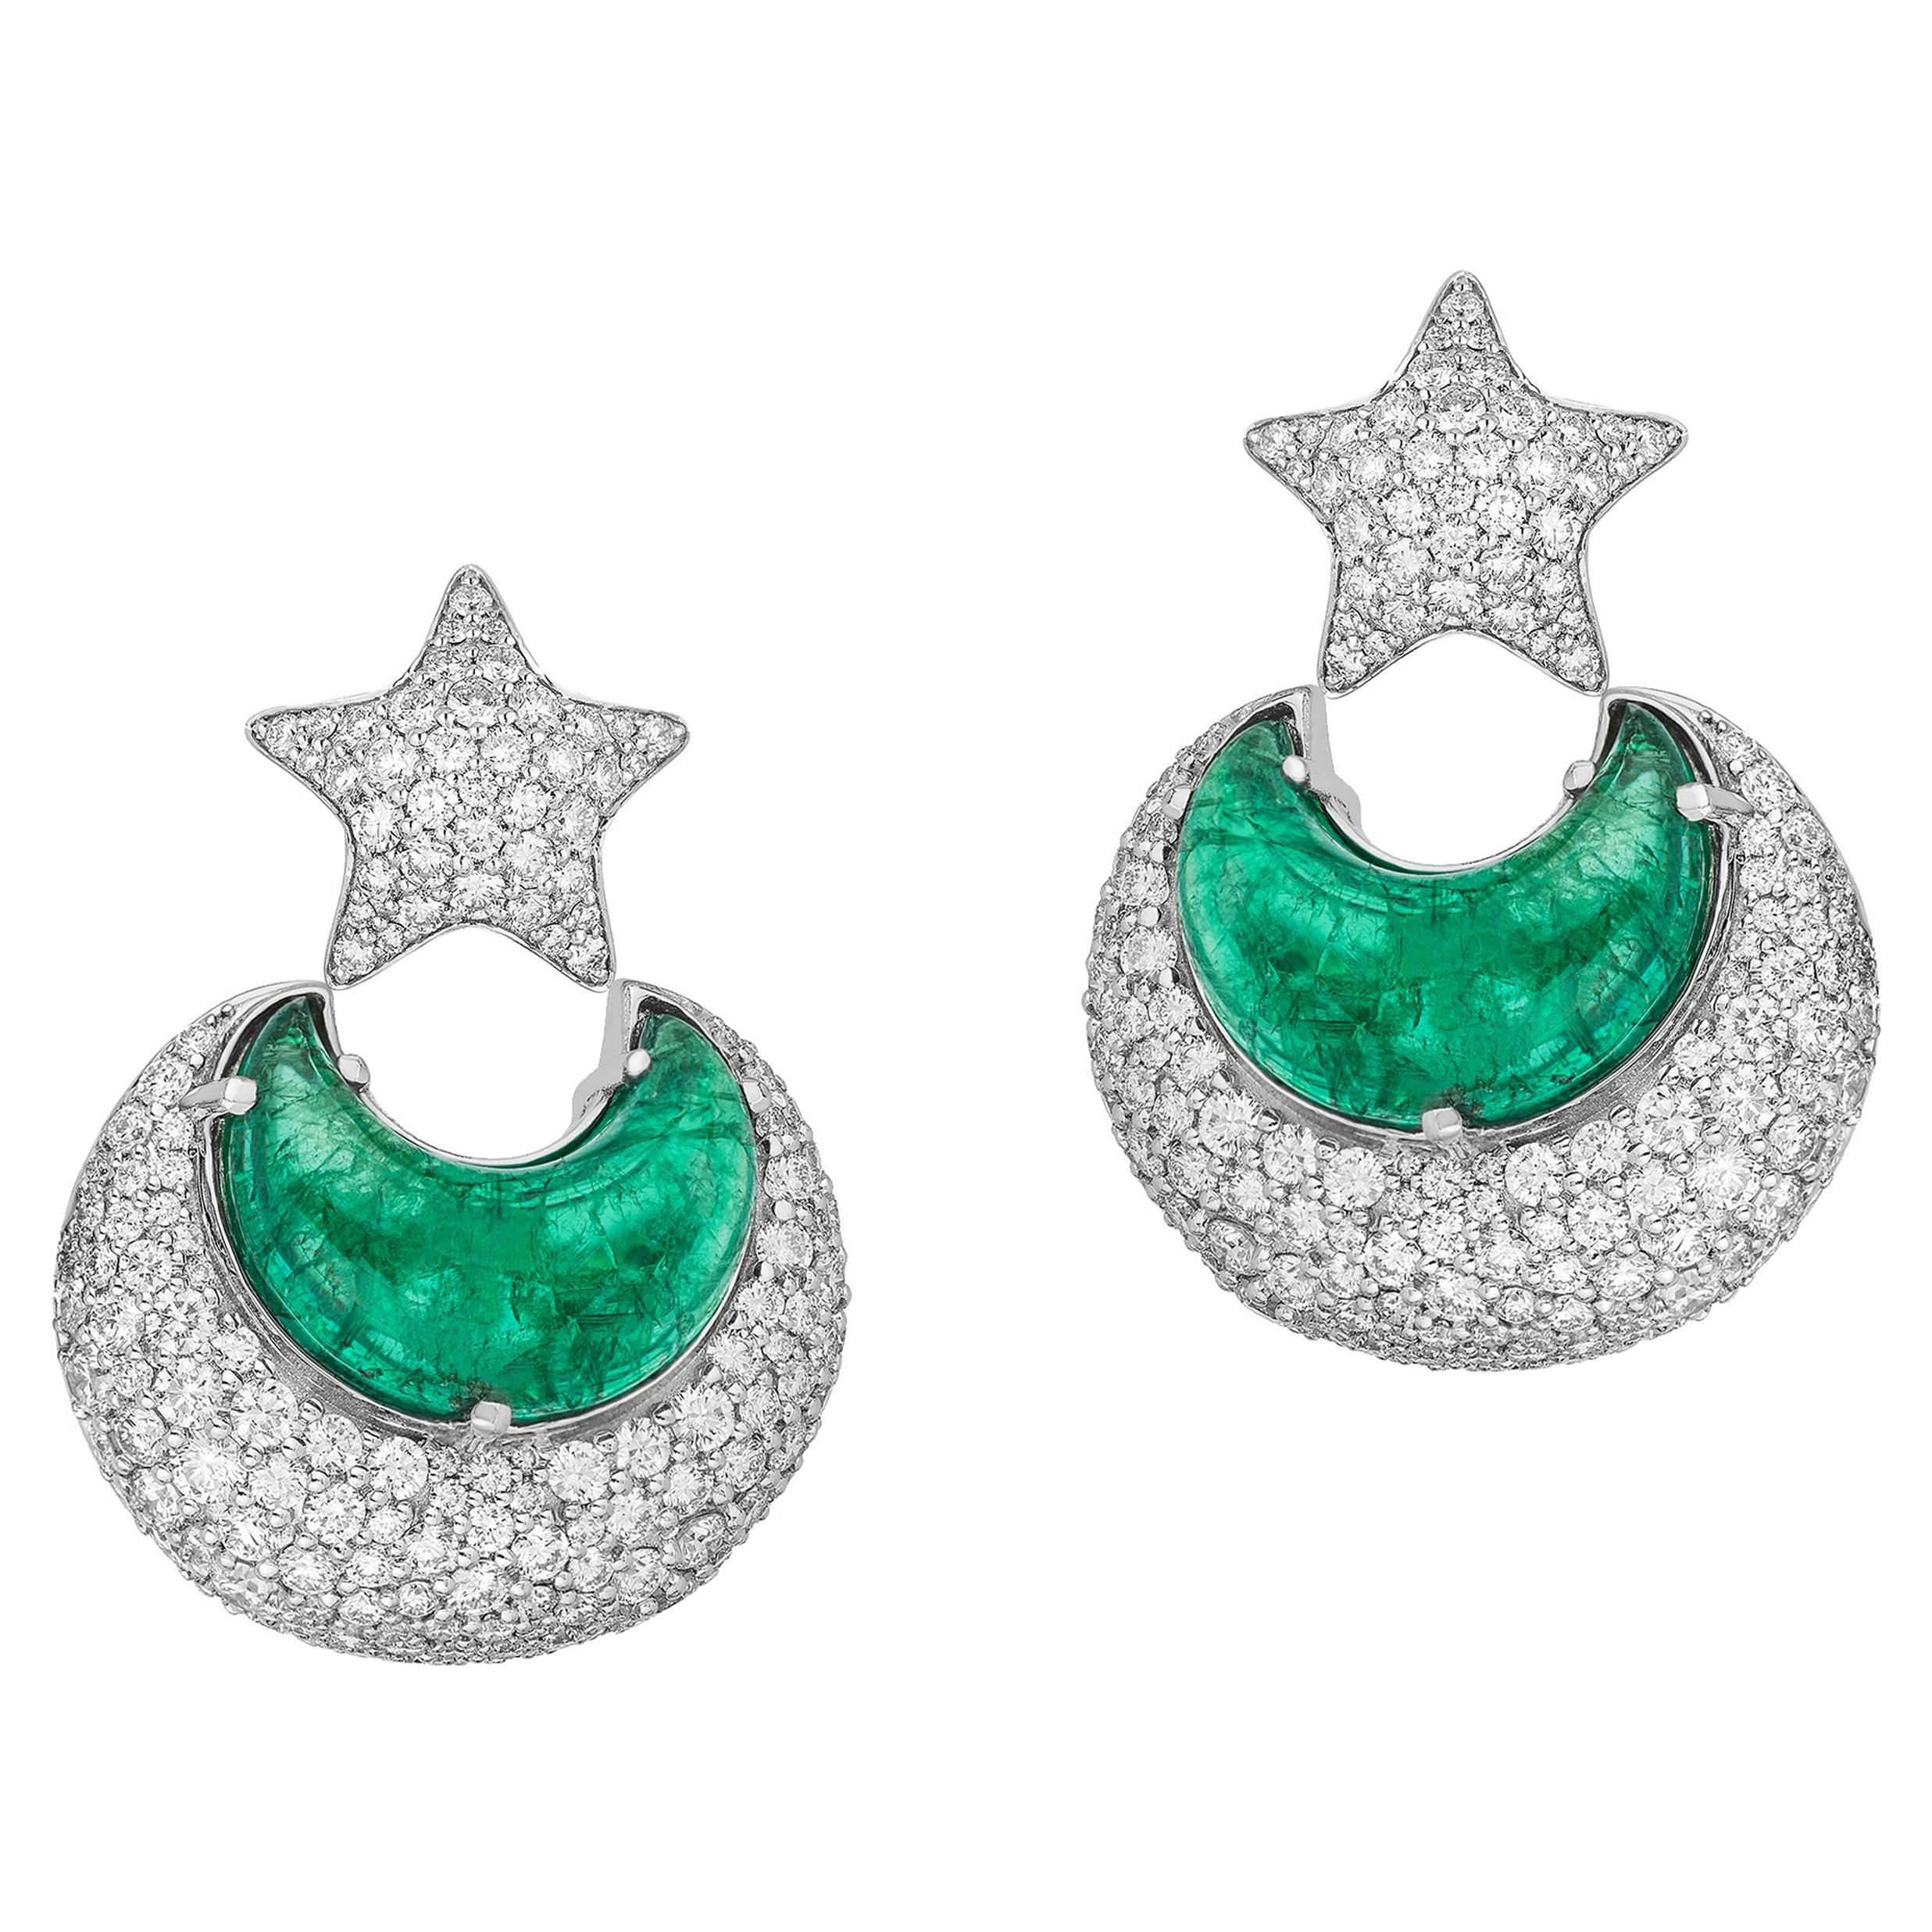 Ohrringe mit Smaragd in Mondform und Diamanten vonshwara